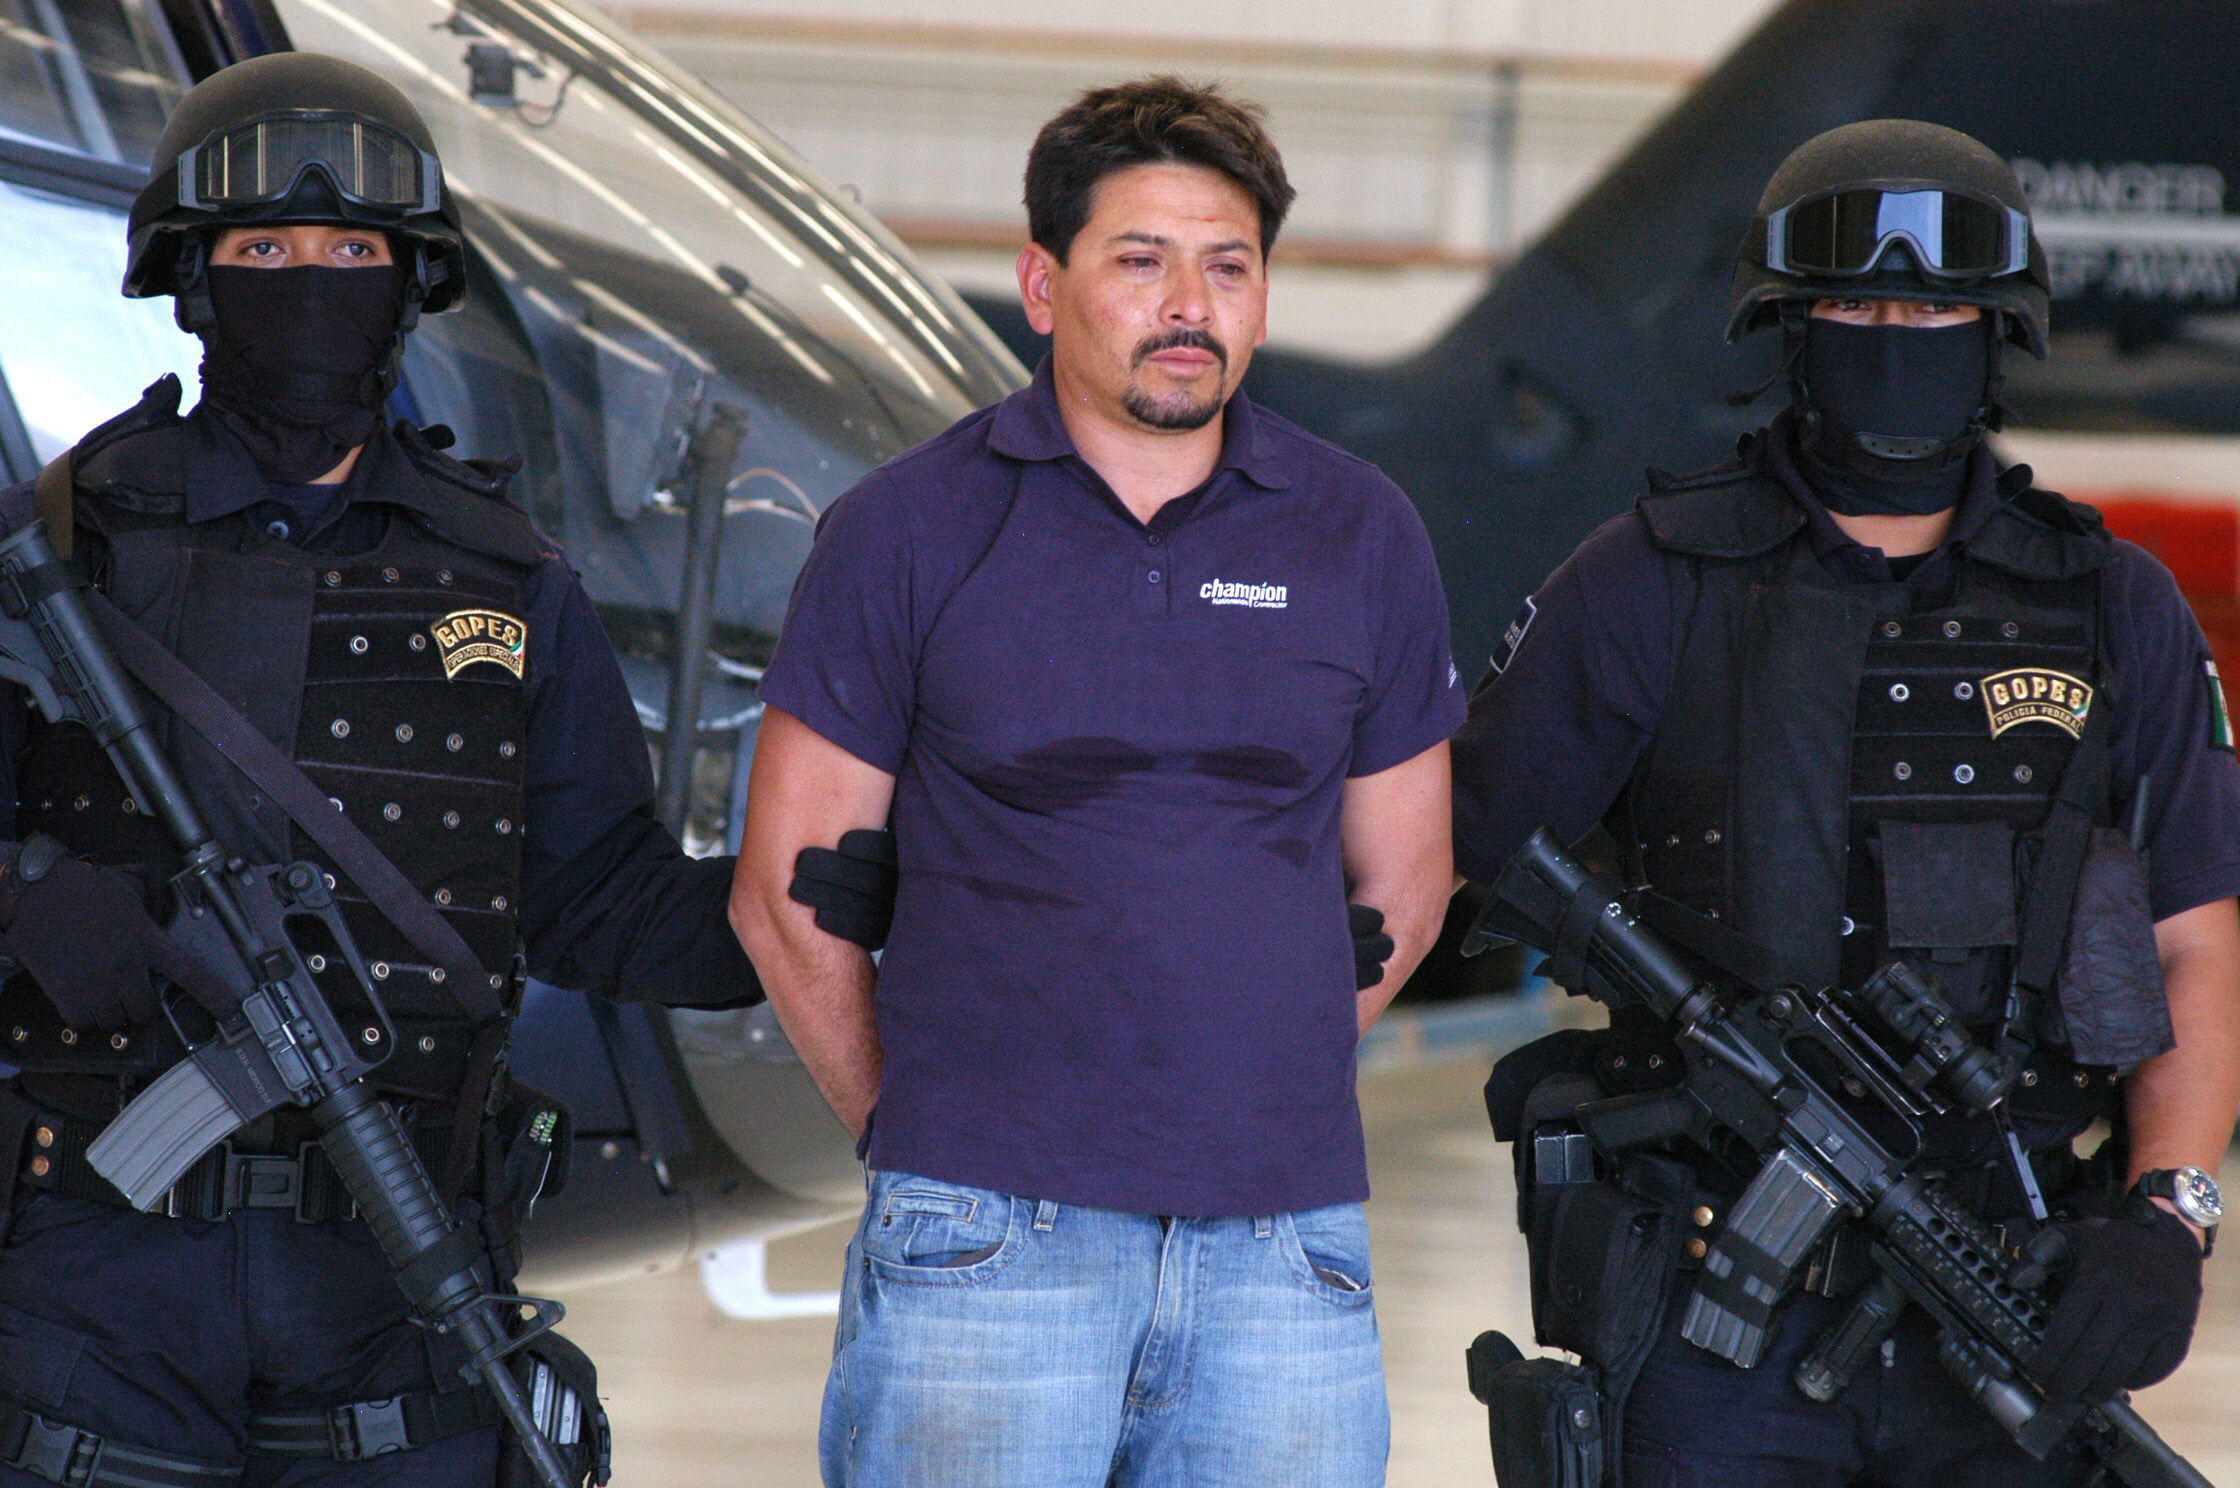  Condenan en Texas a 43 aA�os de cA?rcel a “La Minsa”, jefe de sicarios de la Familia Michoacana